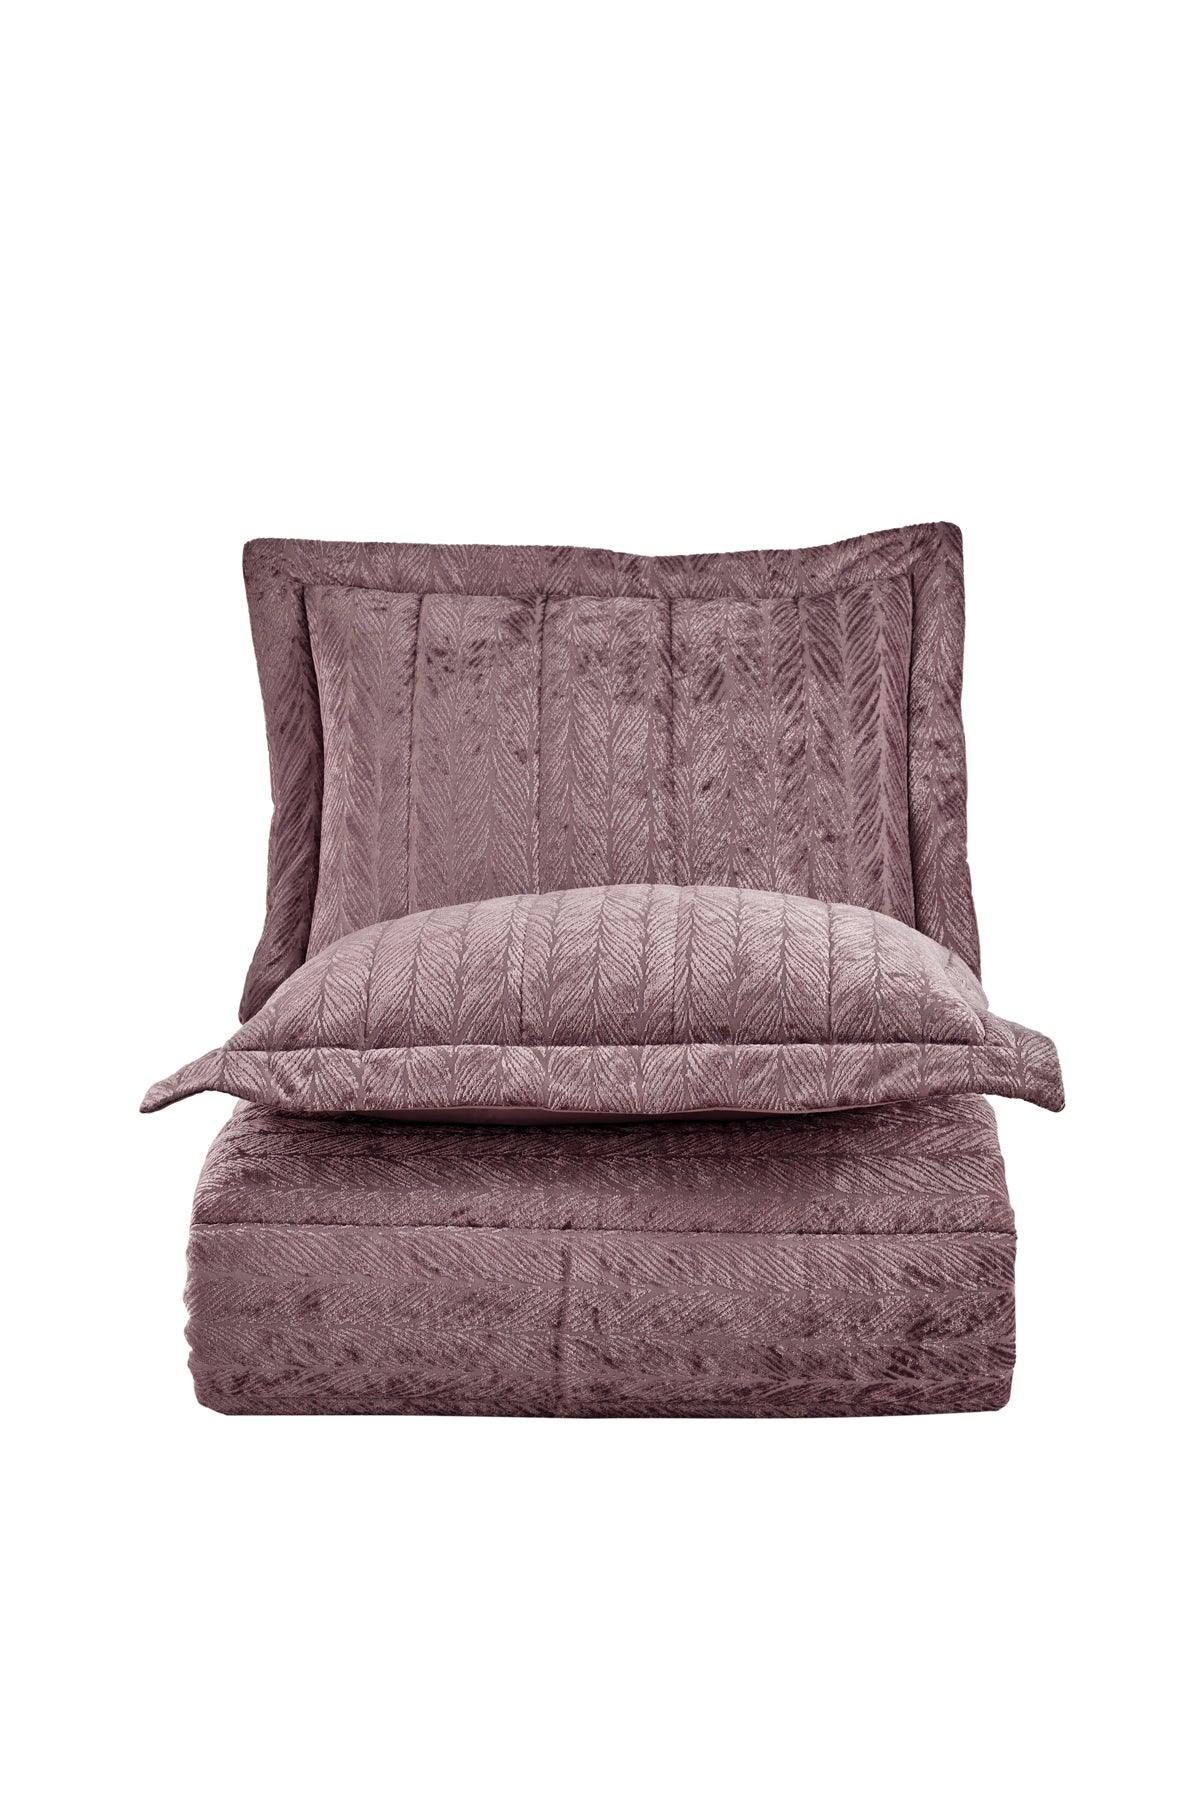 Comfort yeni nesil uykuseti - 3 parça Velvet Gülkurusu (230x220cm) - Elart Home